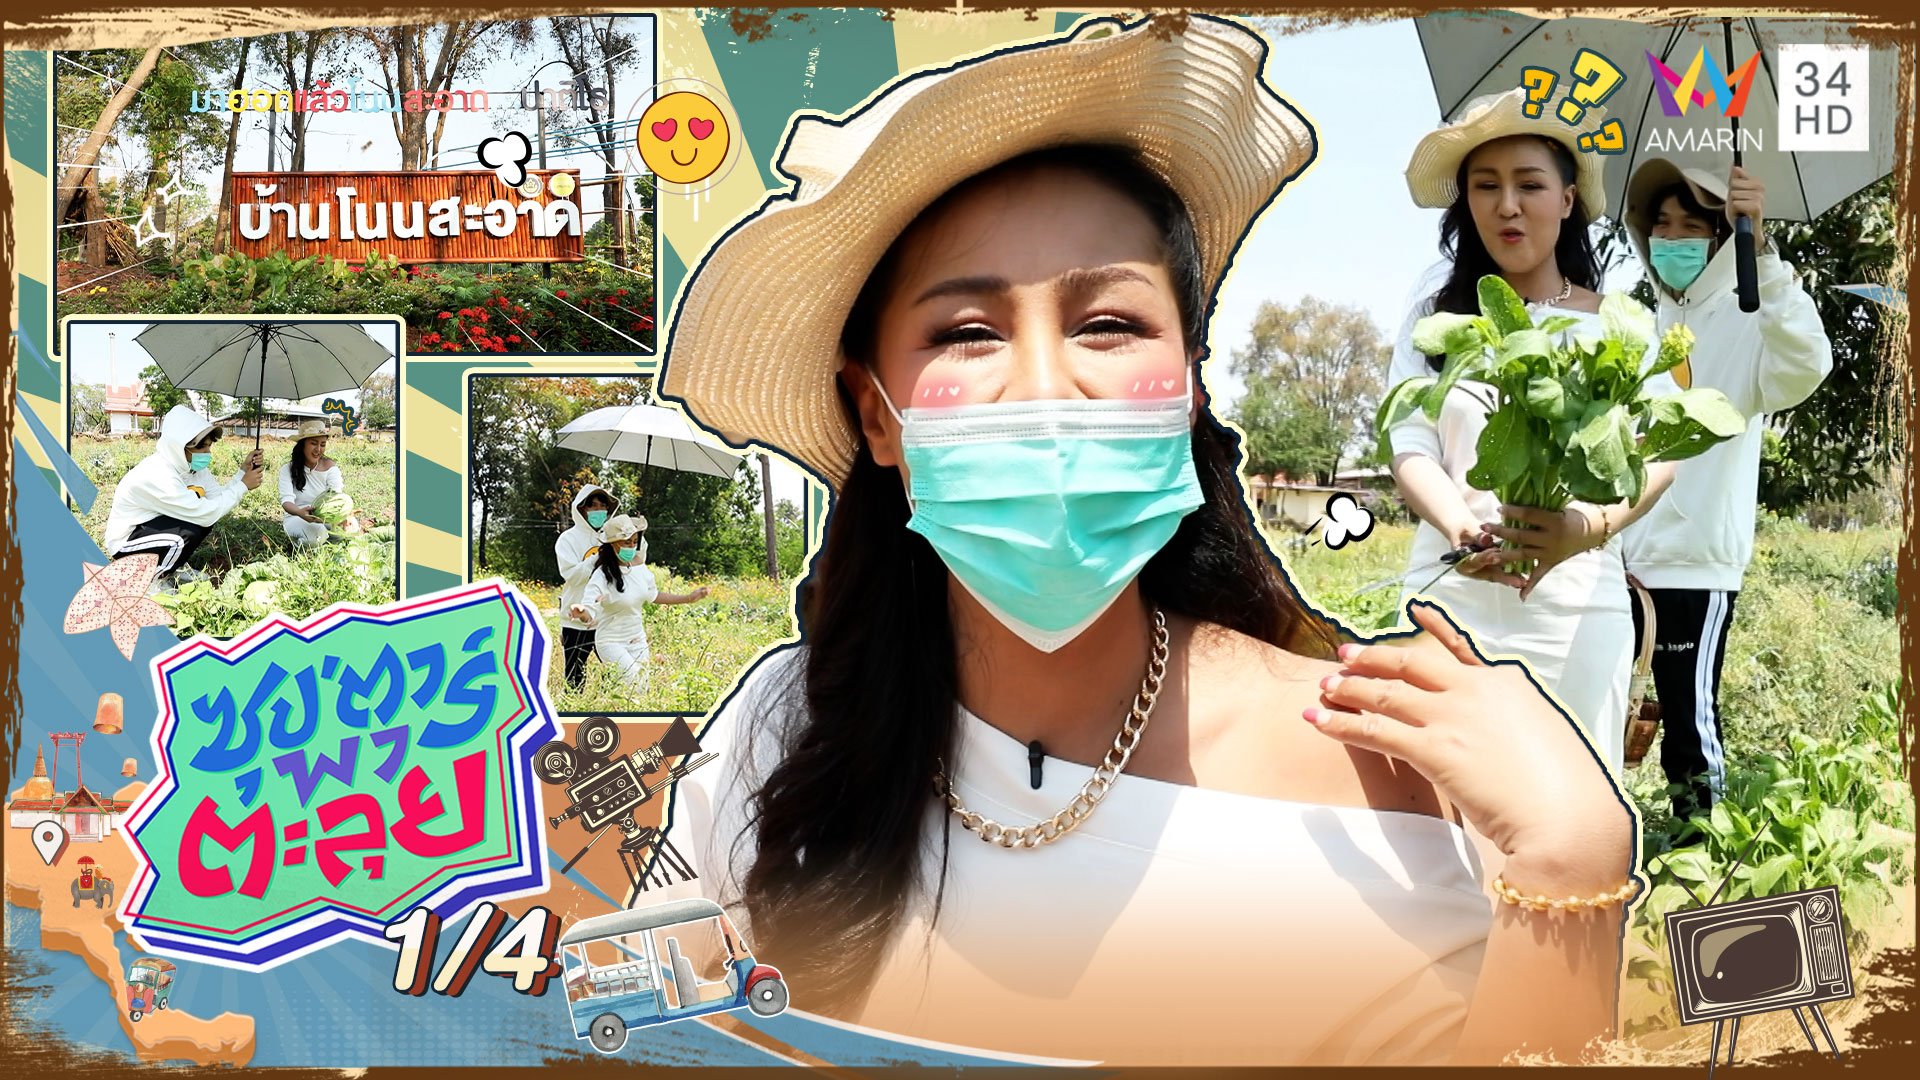 "หญิงลี" พาชมสวนผักปลอดสารพิษ บ้านโนนสะอาด จ.บุรีรัมย์ | ซุปตาร์พาตะลุย | 24 มี.ค. 65 (1/4) | AMARIN TVHD34